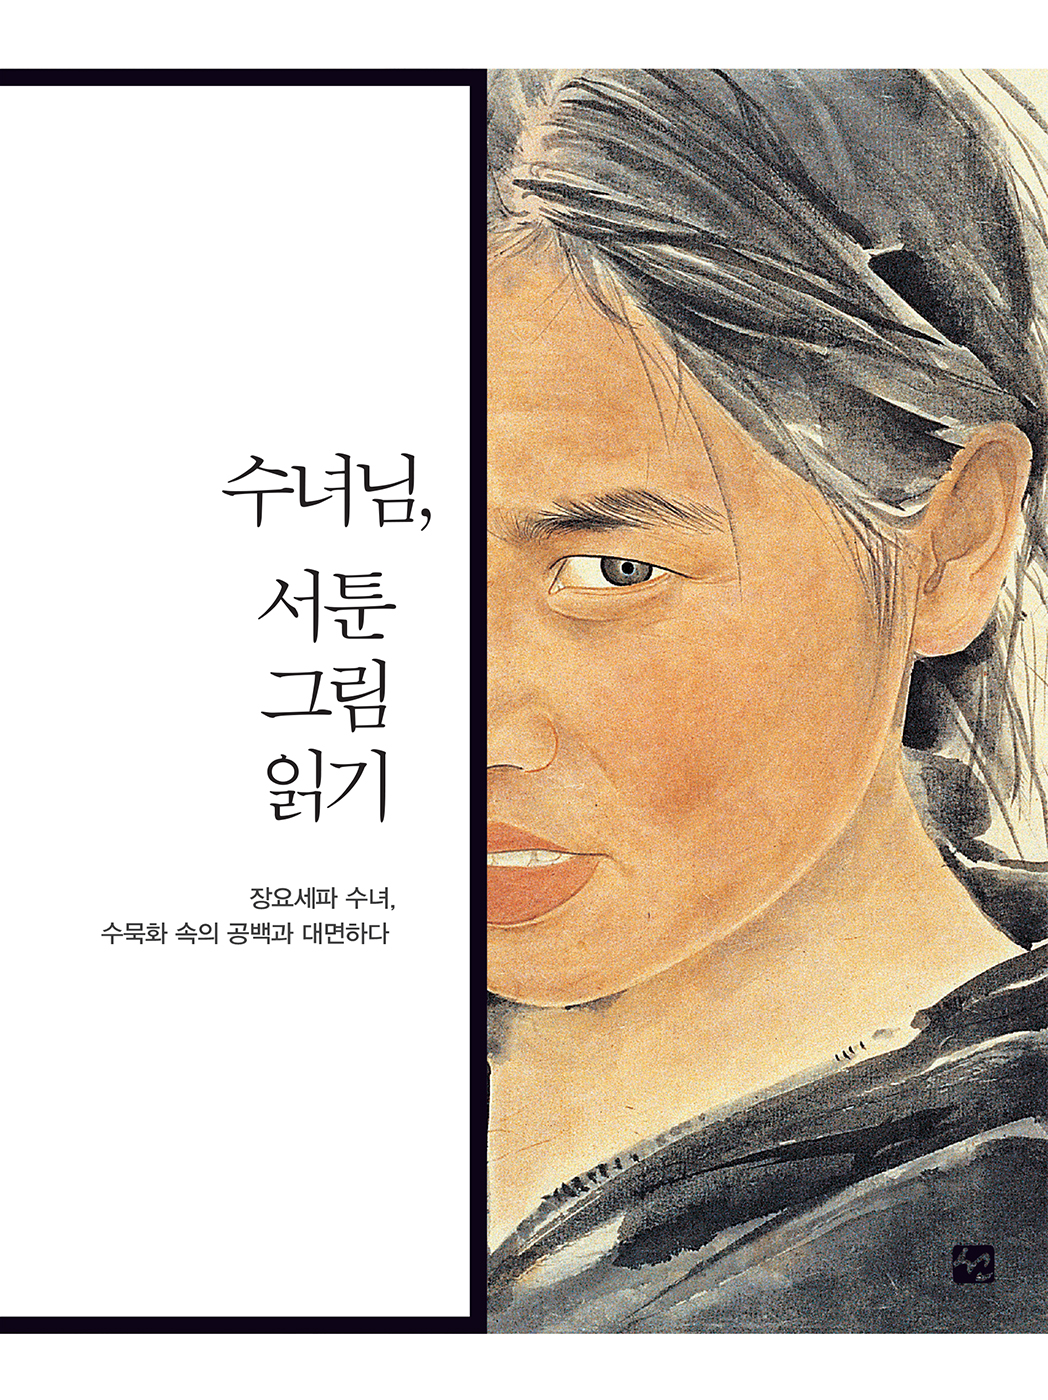 수녀님, 서툰 그림 읽기 : 장요세파 수녀, 수묵..